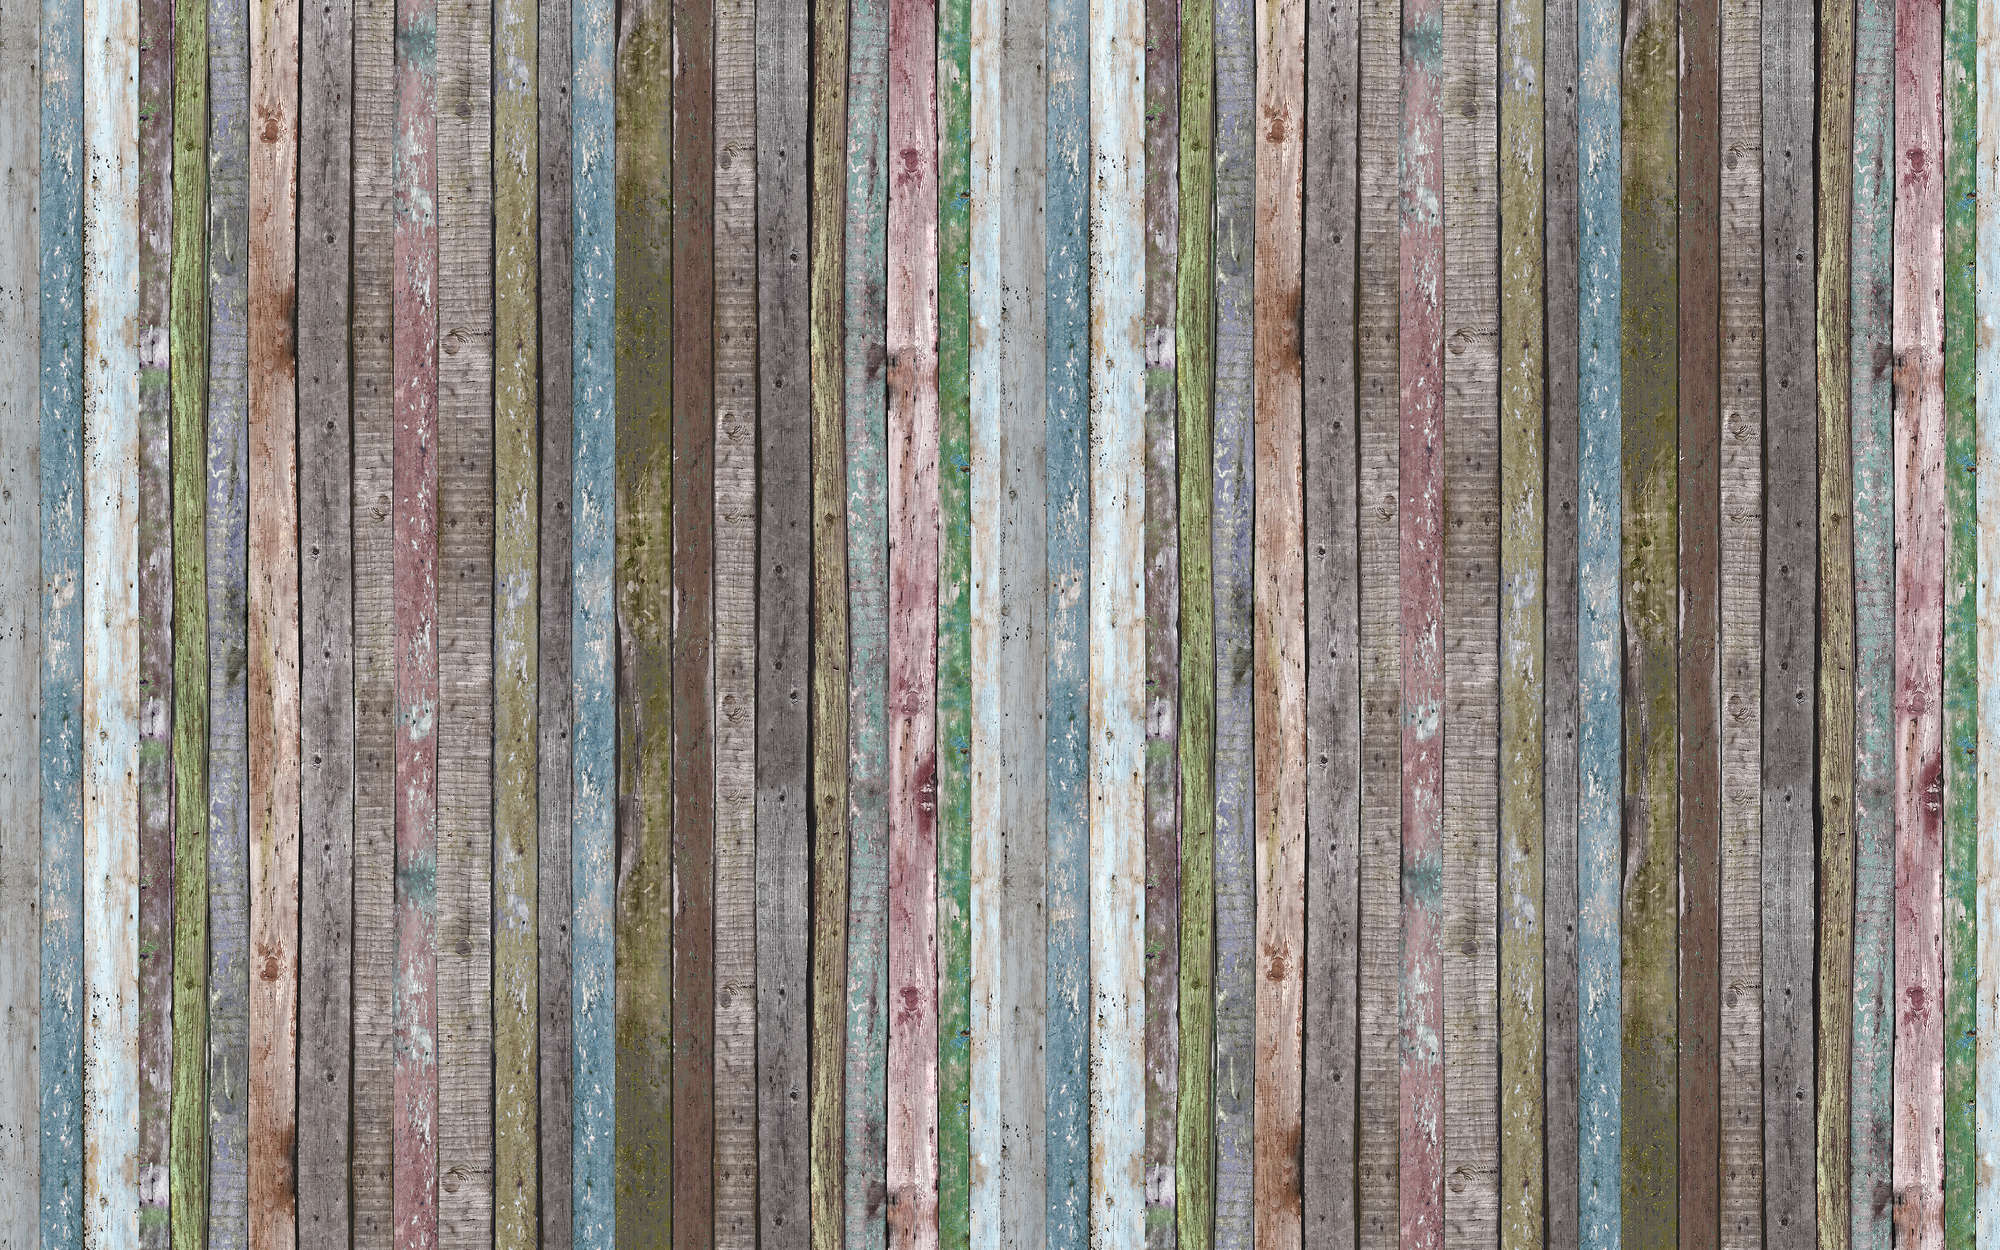             Wooden striped beams mural - Matt smooth fleece
        